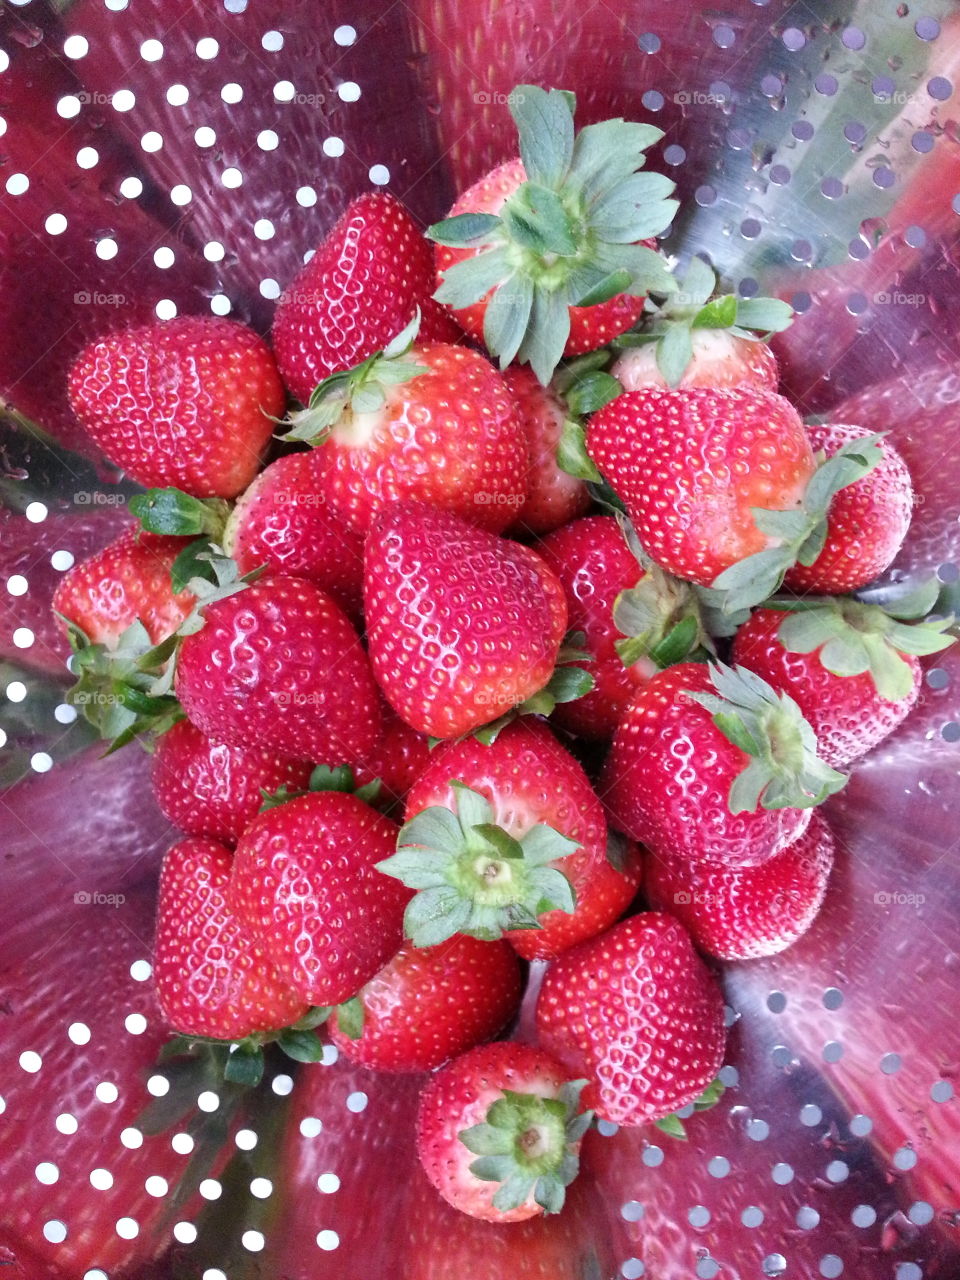 strawberries. strawberries